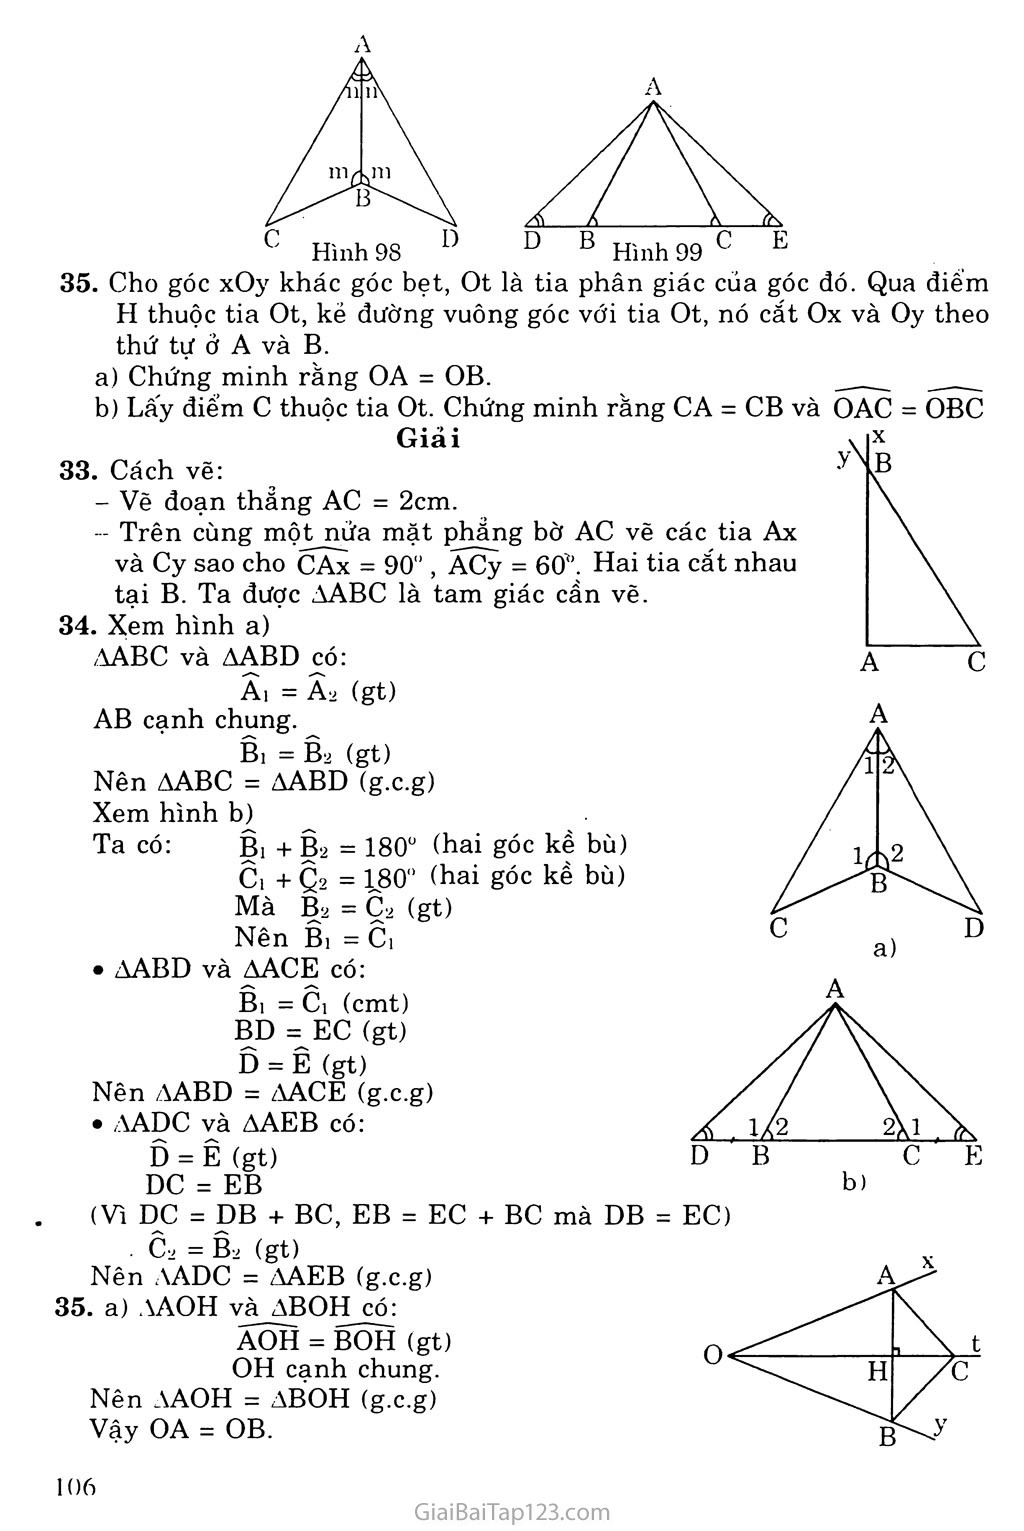 Bài 5. Trường hợp bằng nhau thứ ba của tam giác: góc - cạnh - góc (g. c. g) trang 2